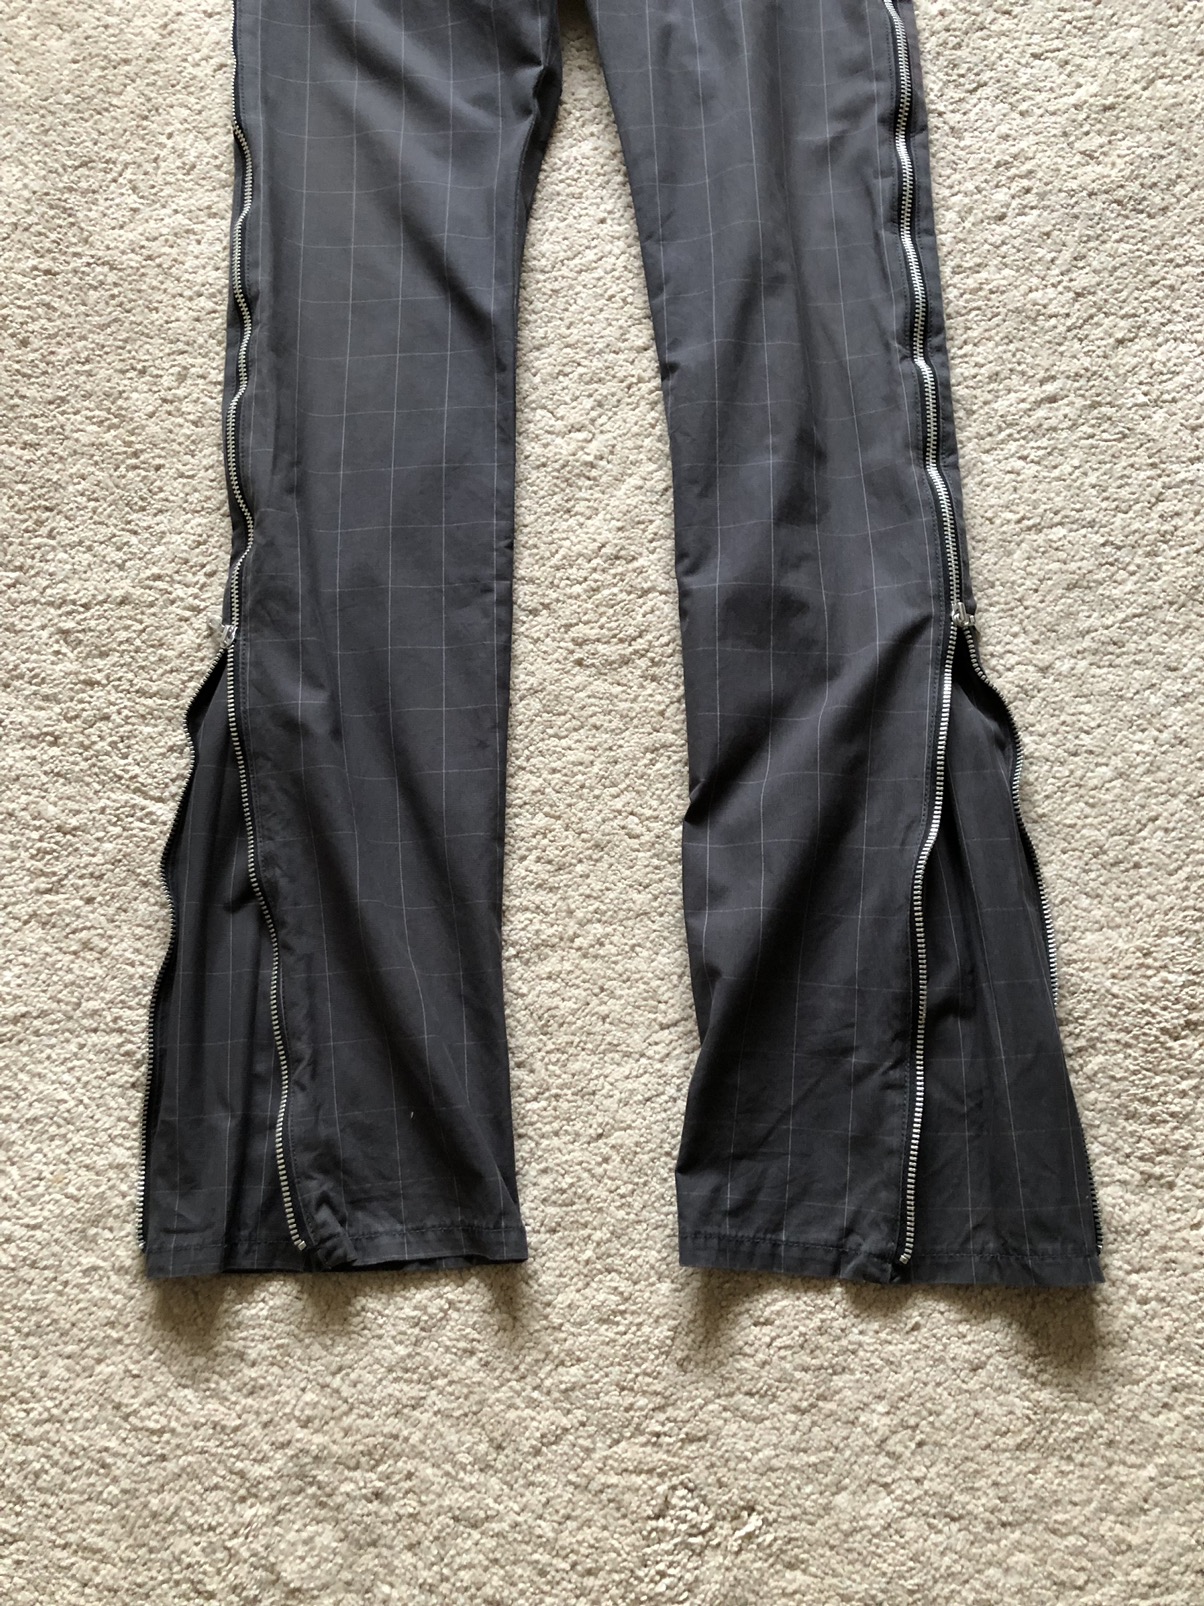 Katharine Hamnett London - 1990s Katharine Hamnett Checked Side Zipper Pant - 2